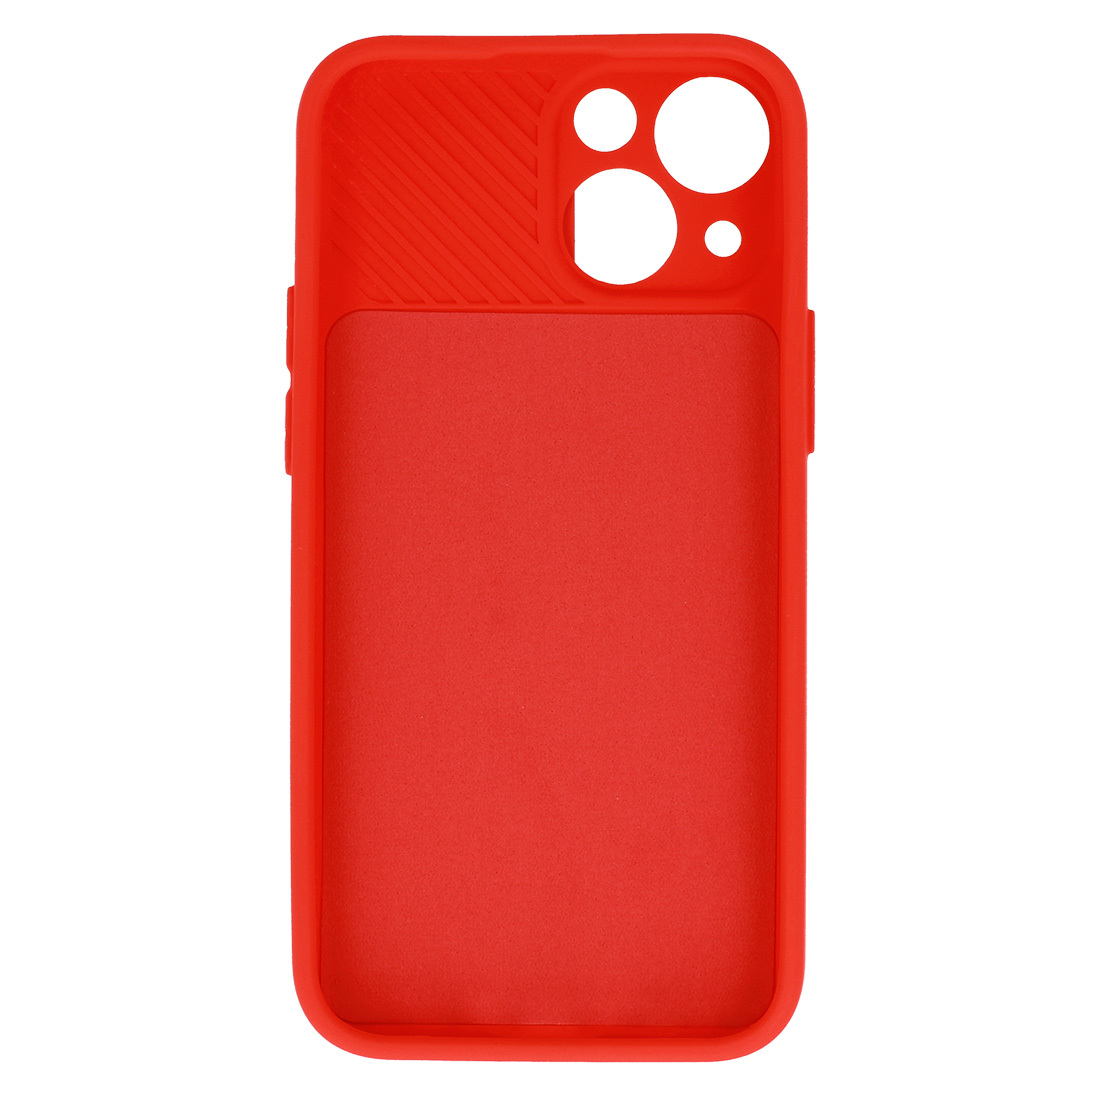 Pokrowiec etui z elastycznego TPU Camshield Soft Case czerwone APPLE iPhone 8 / 5